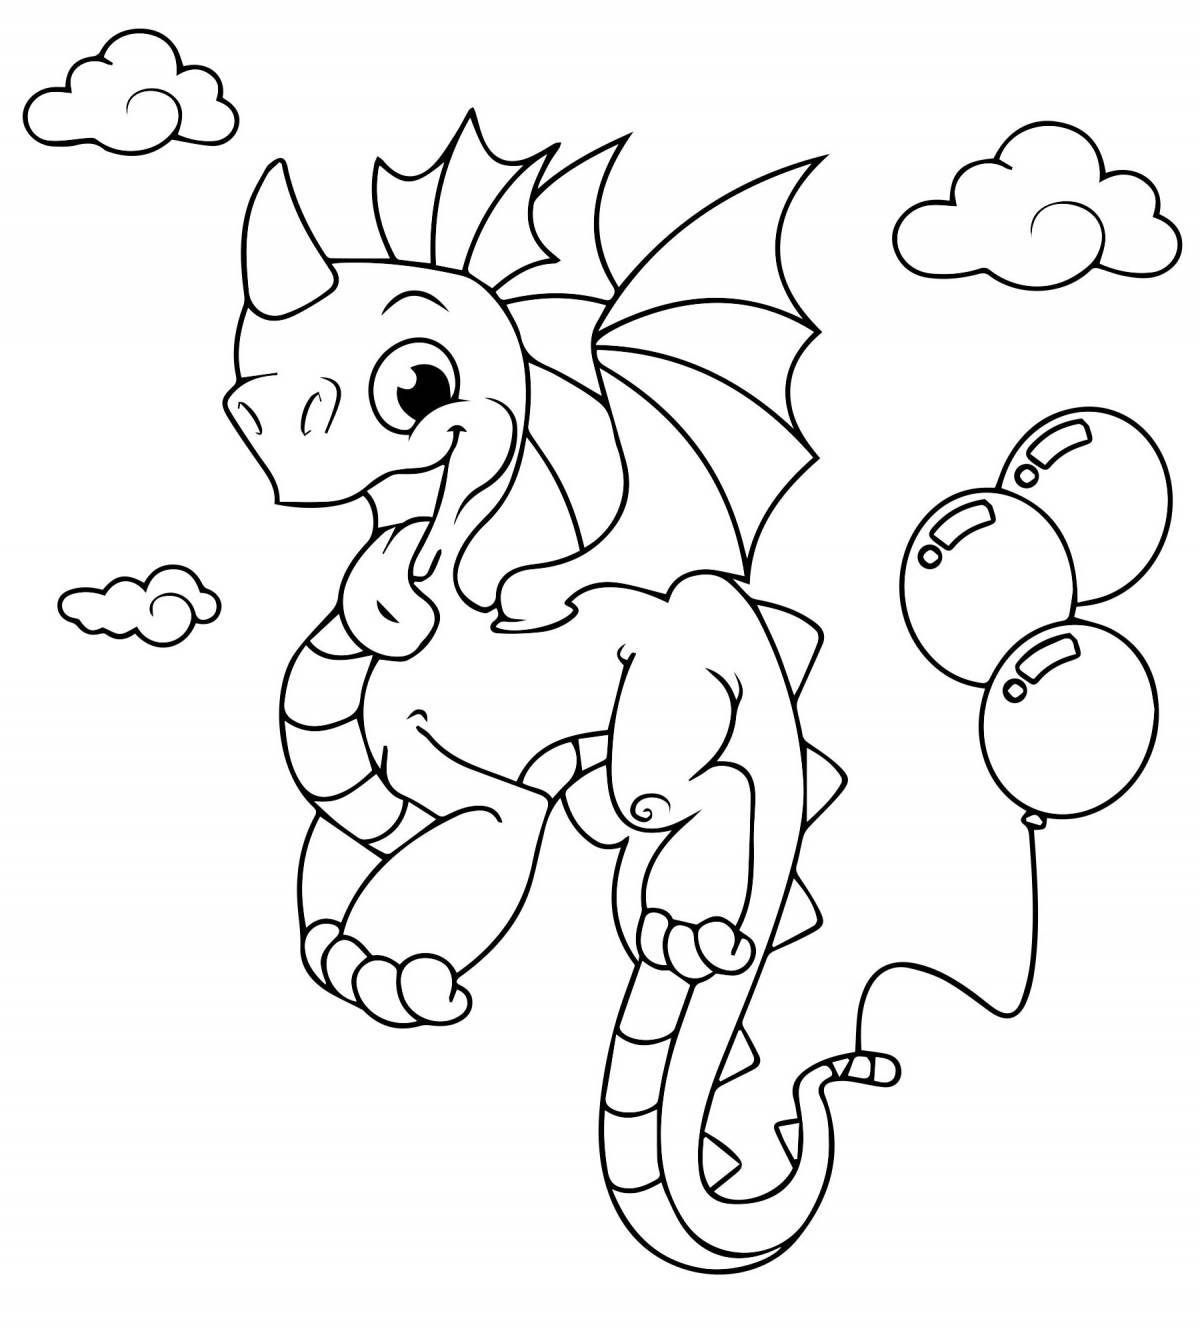 Royal coloring dragon